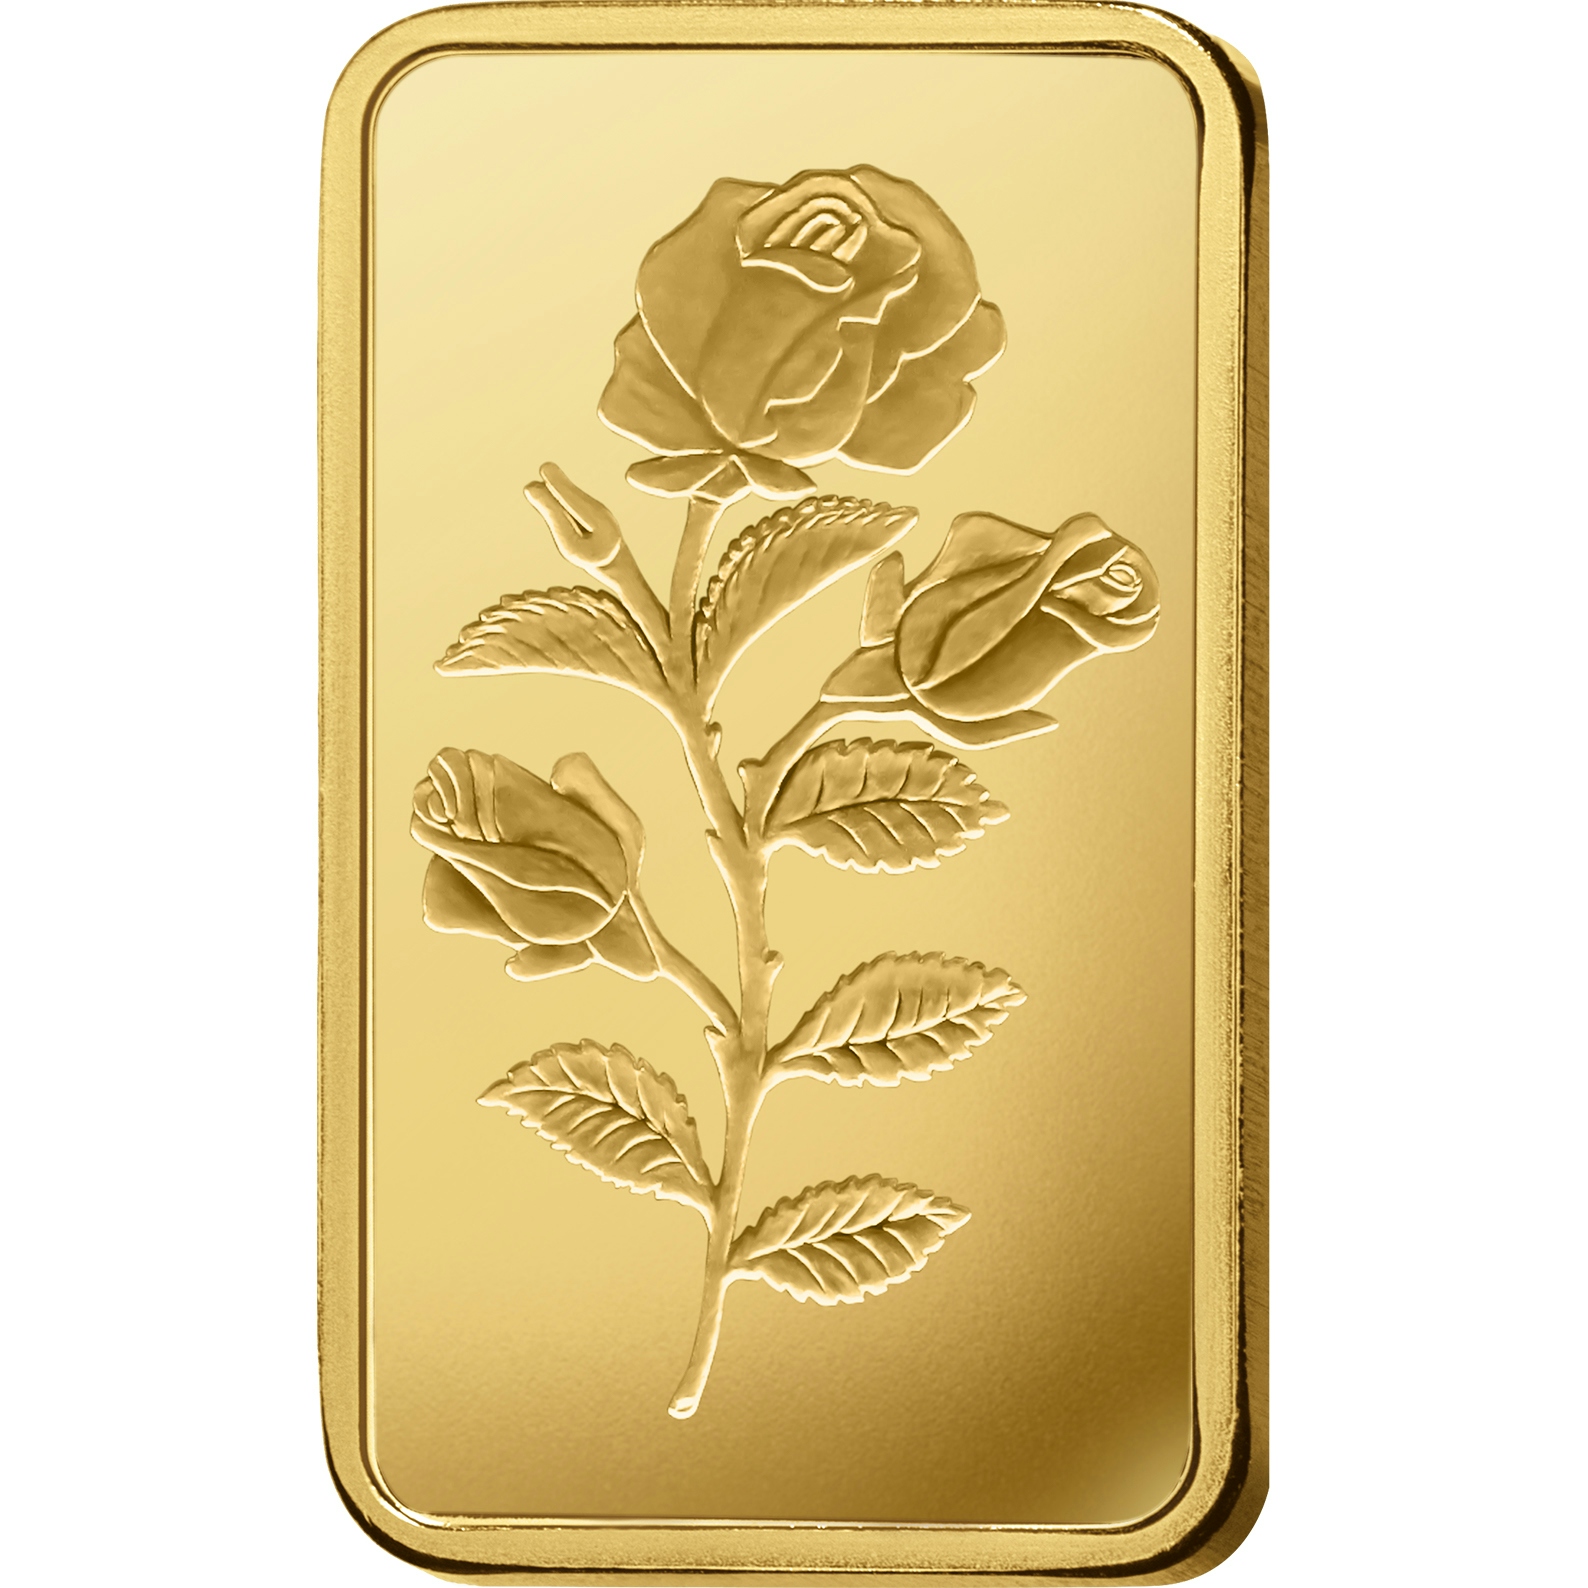 Compare oro, 5 grammi d'oro puro Rosa - PAMP Svizzera - Front